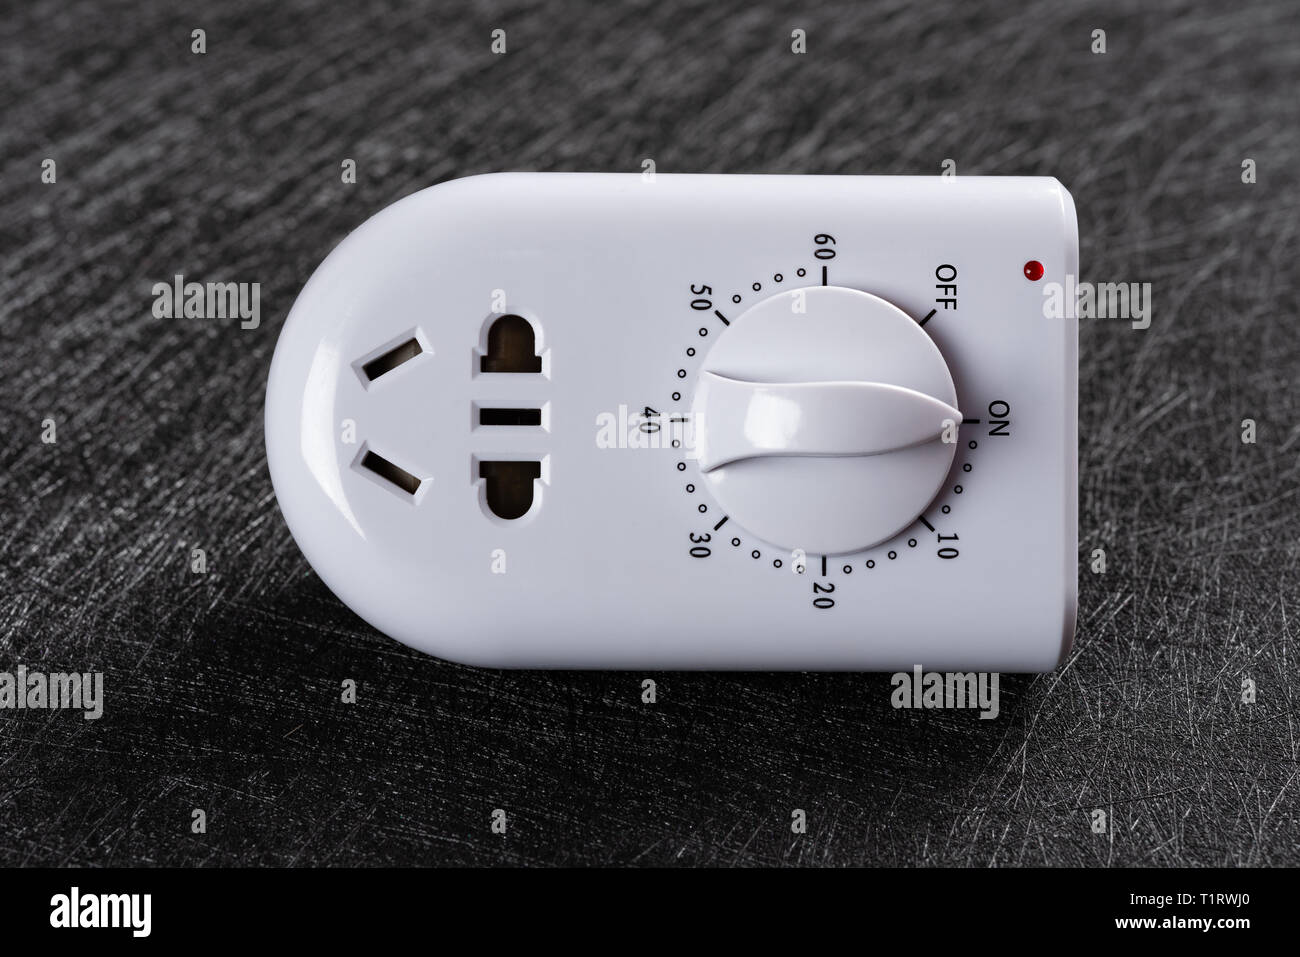 Prise d'alimentation électrique avec minuterie Photo Stock - Alamy